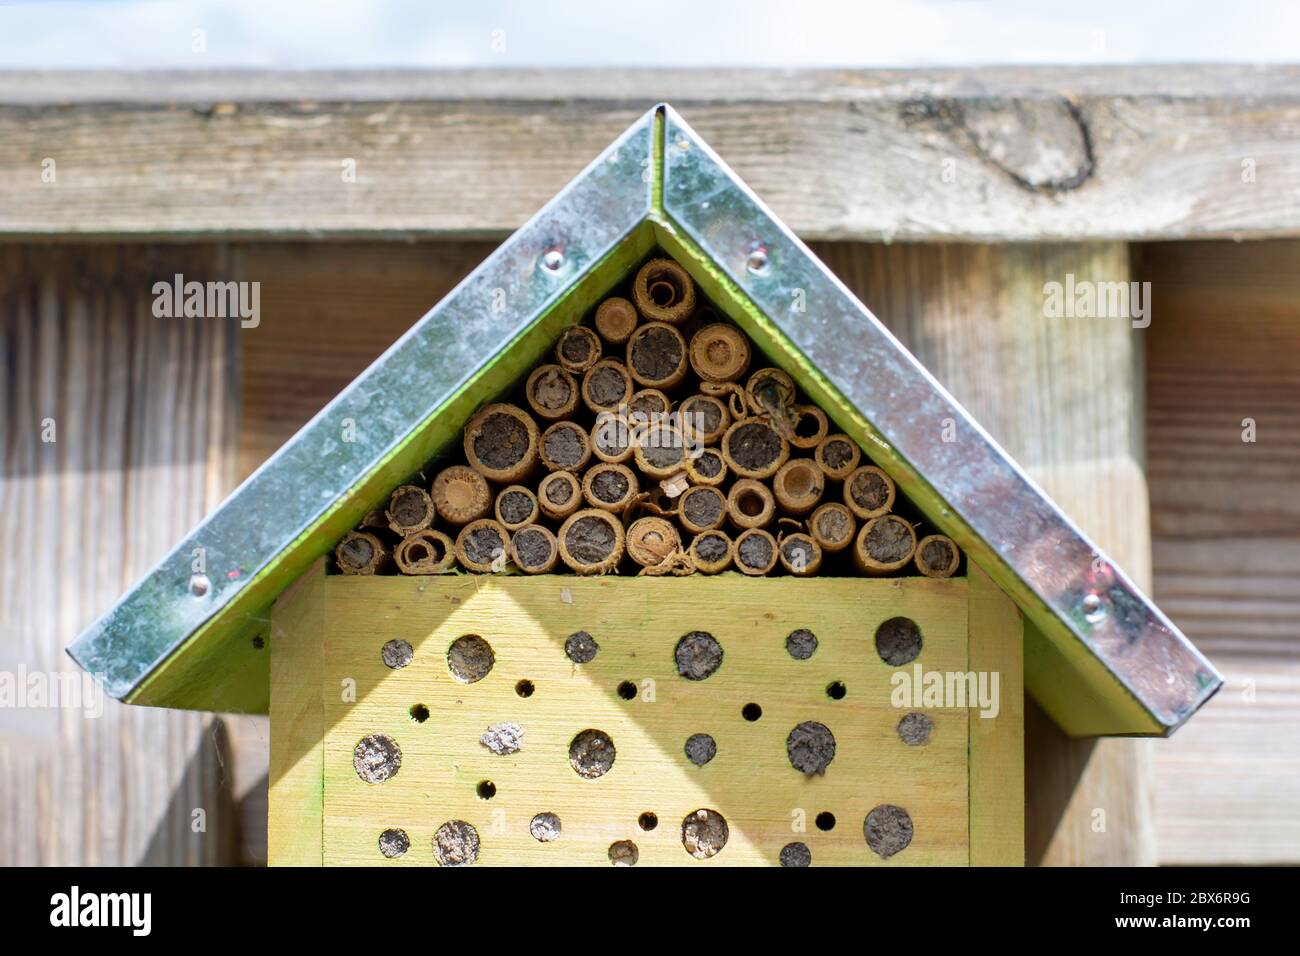 Un petit hôtel insectes écologiques bug House avec une abeille sauvage sur la droite. Hôtel écologique et écologique. Les abeilles sauvages et d'autres insectes font un nid Banque D'Images